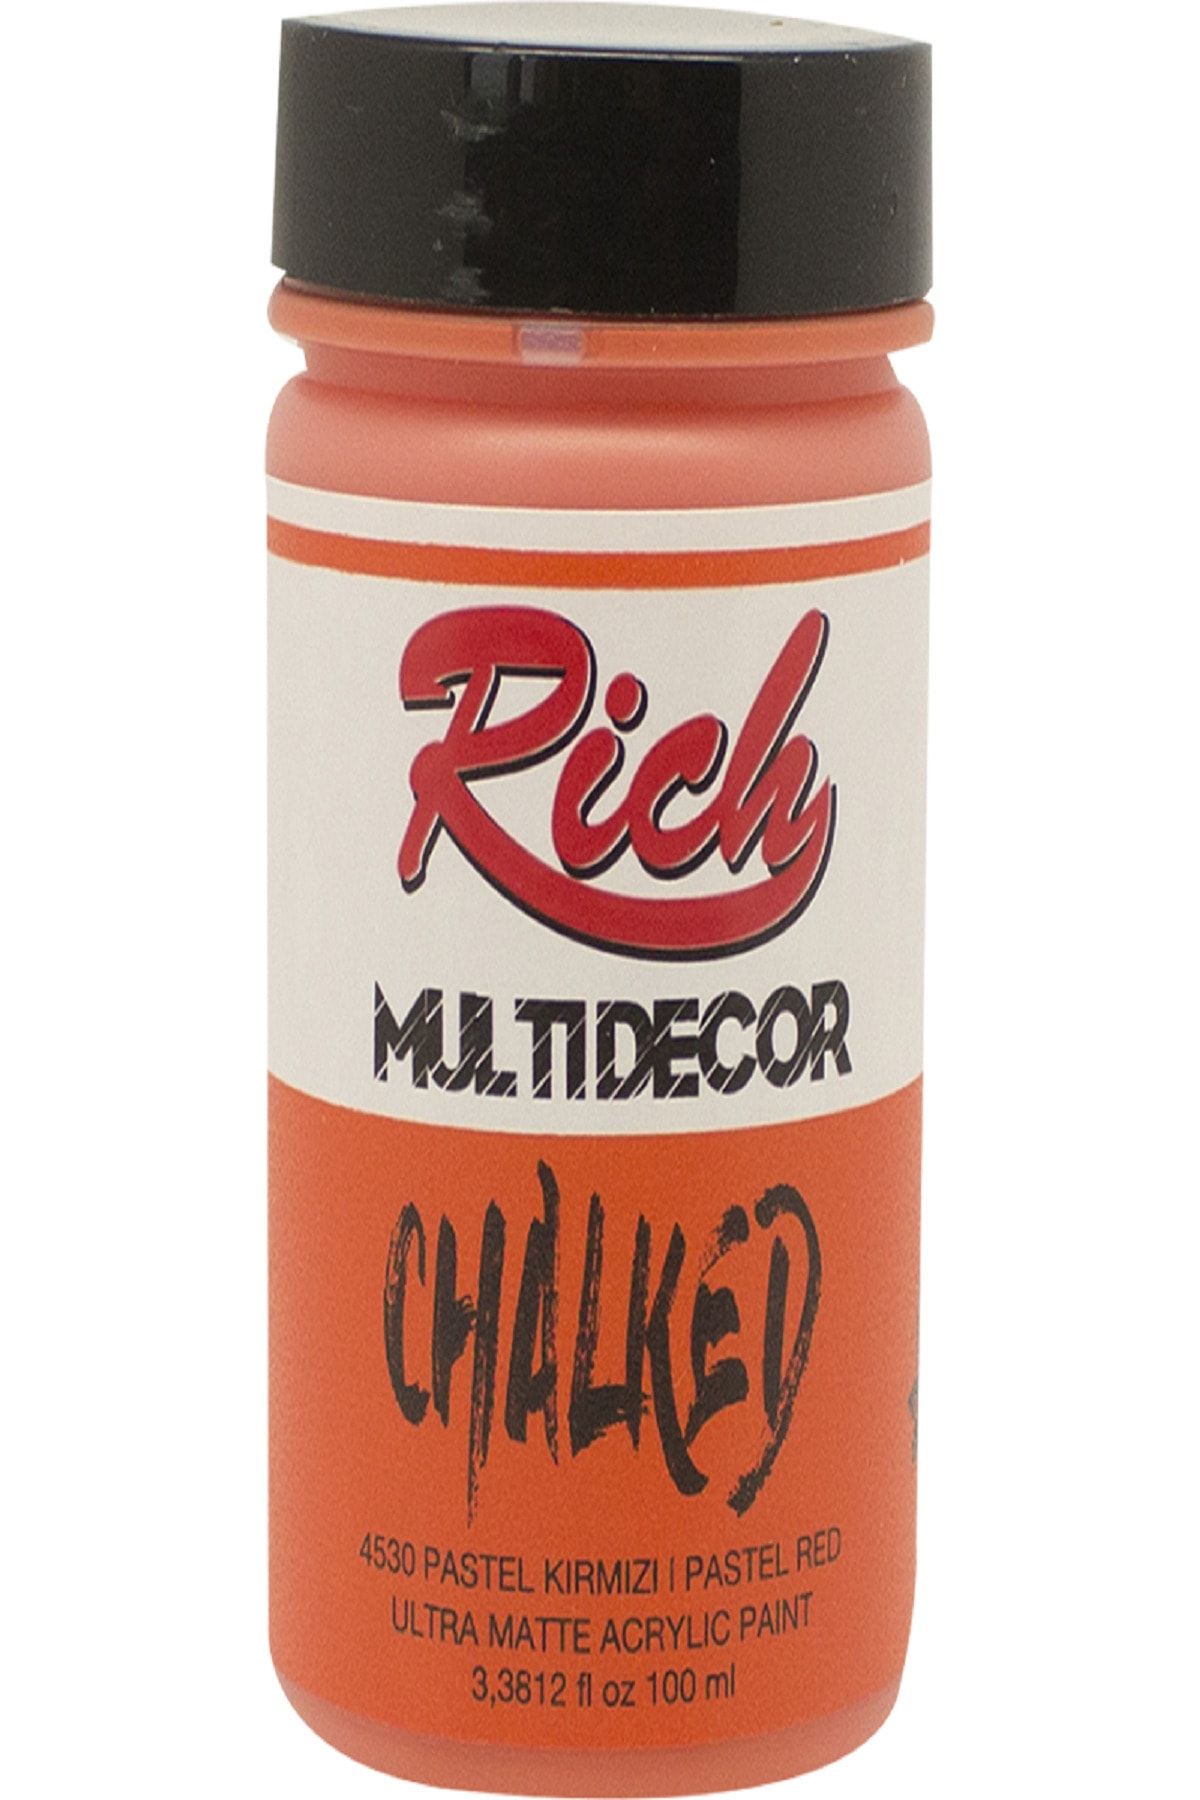 Rich Multi Decor Chalked Akrilik 4530- Pastel Kırmızı 100 cc